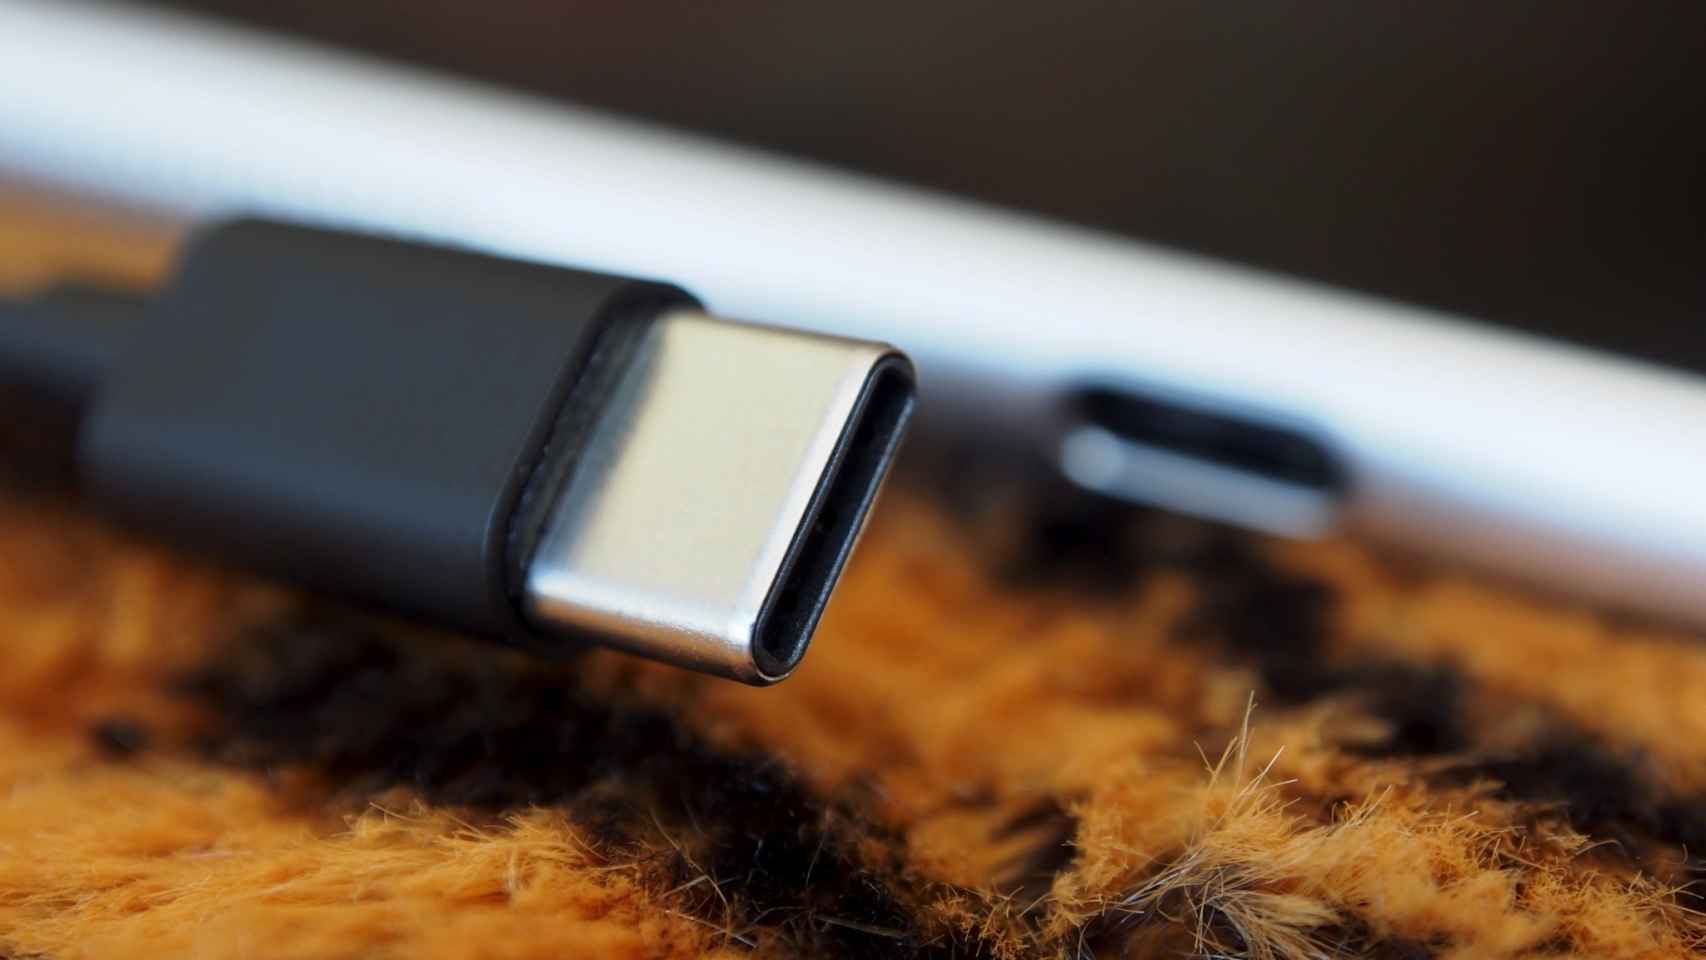 El jack de 3.5mm tiene los días contados, así es el nuevo audio USB